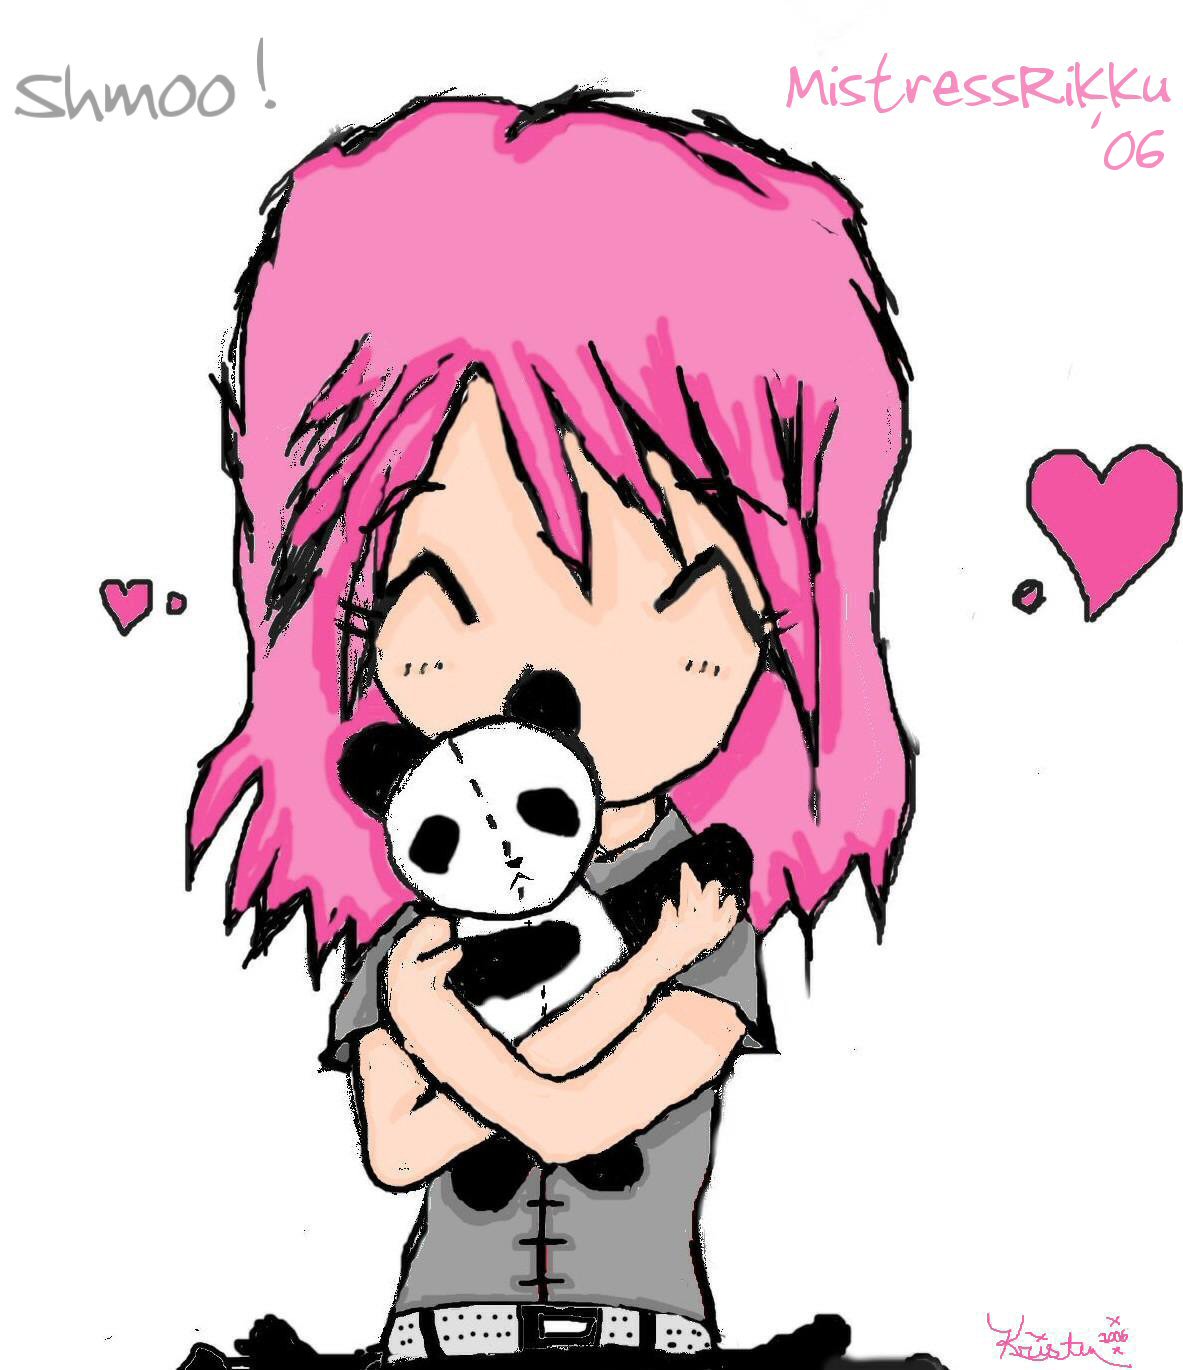 Shmoo, with teddy bear (My original charrie) by MistressRikku